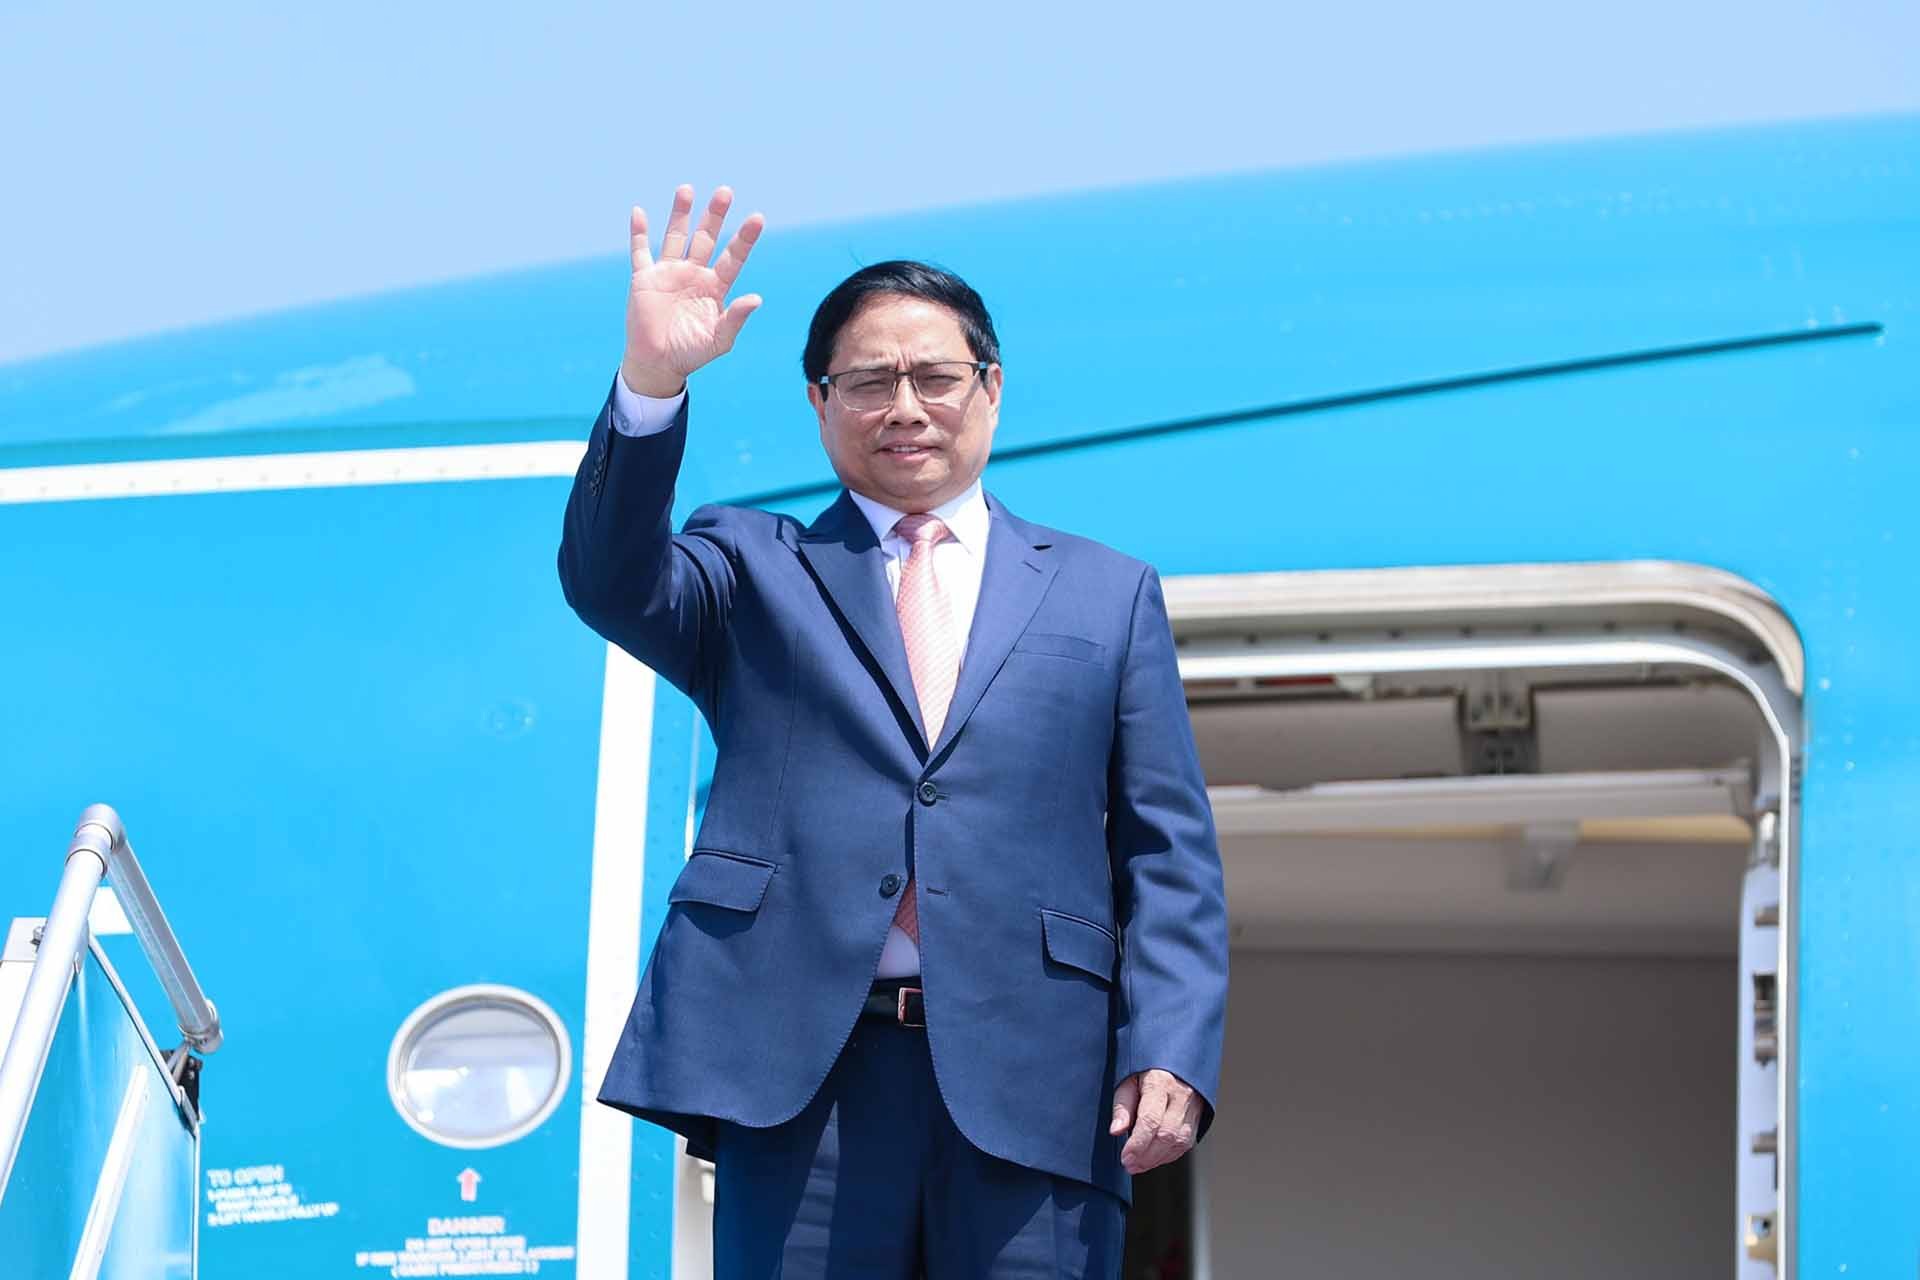 Thủ tướng Phạm Minh Chính lên đường dự Hội nghị cấp cao ASEAN-GCC và thăm Vương quốc Saudi Arabia